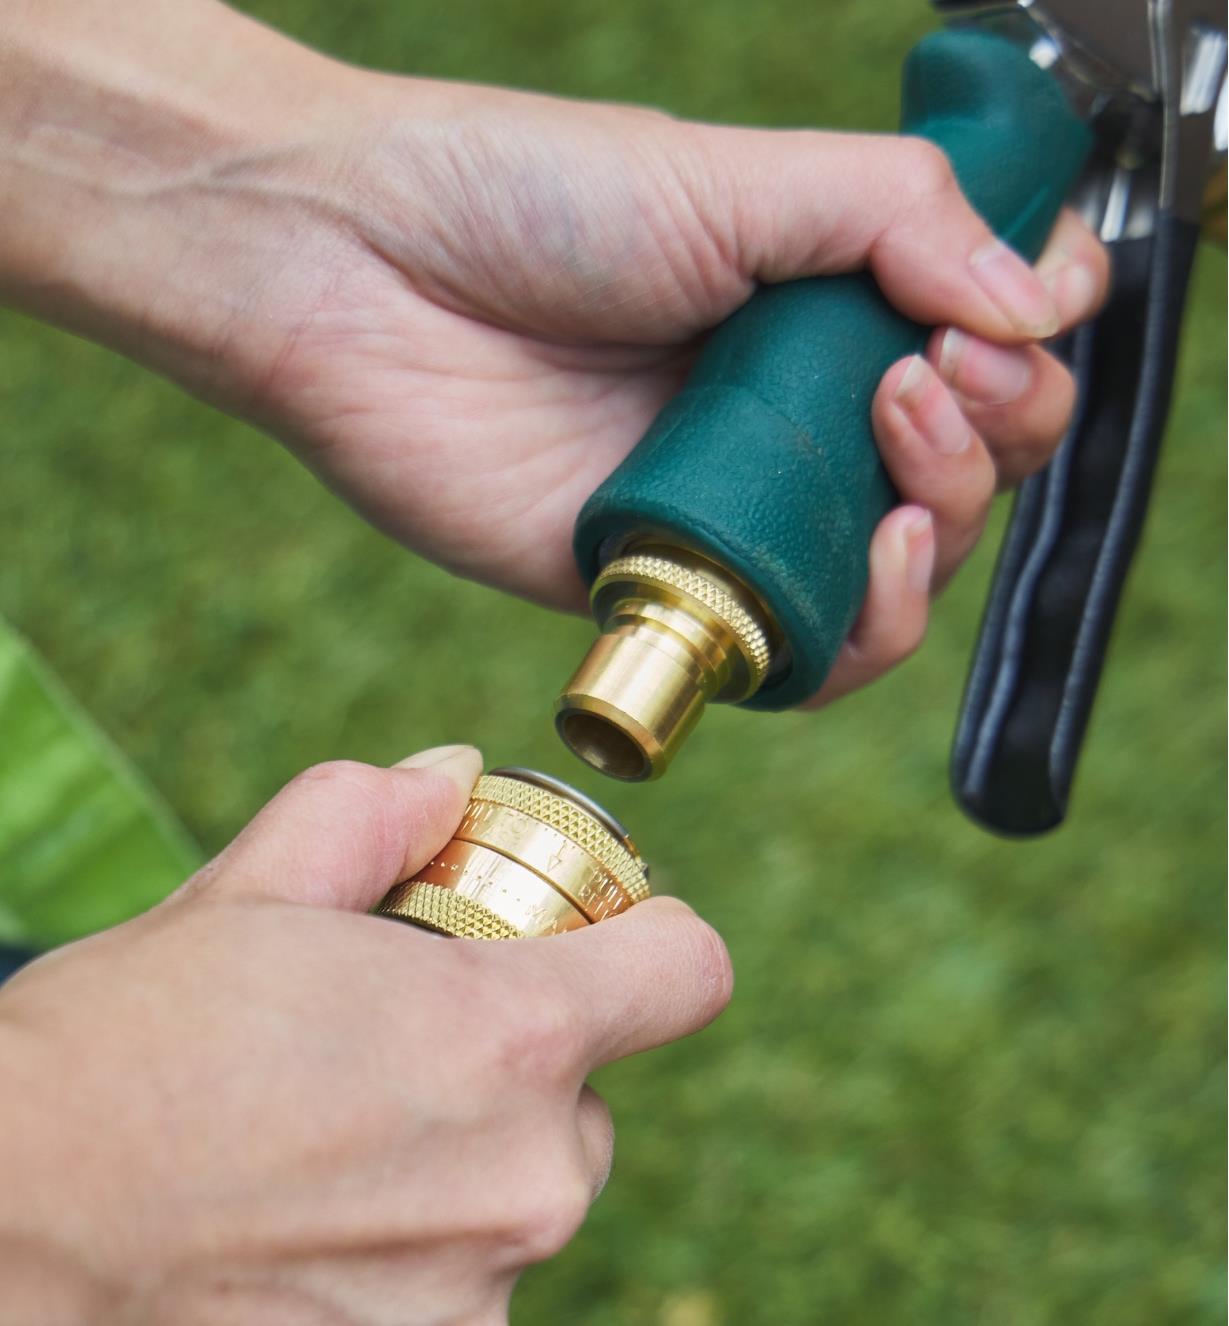 Connecting a garden hose to a spray nozzle using a brass quick-connect coupler